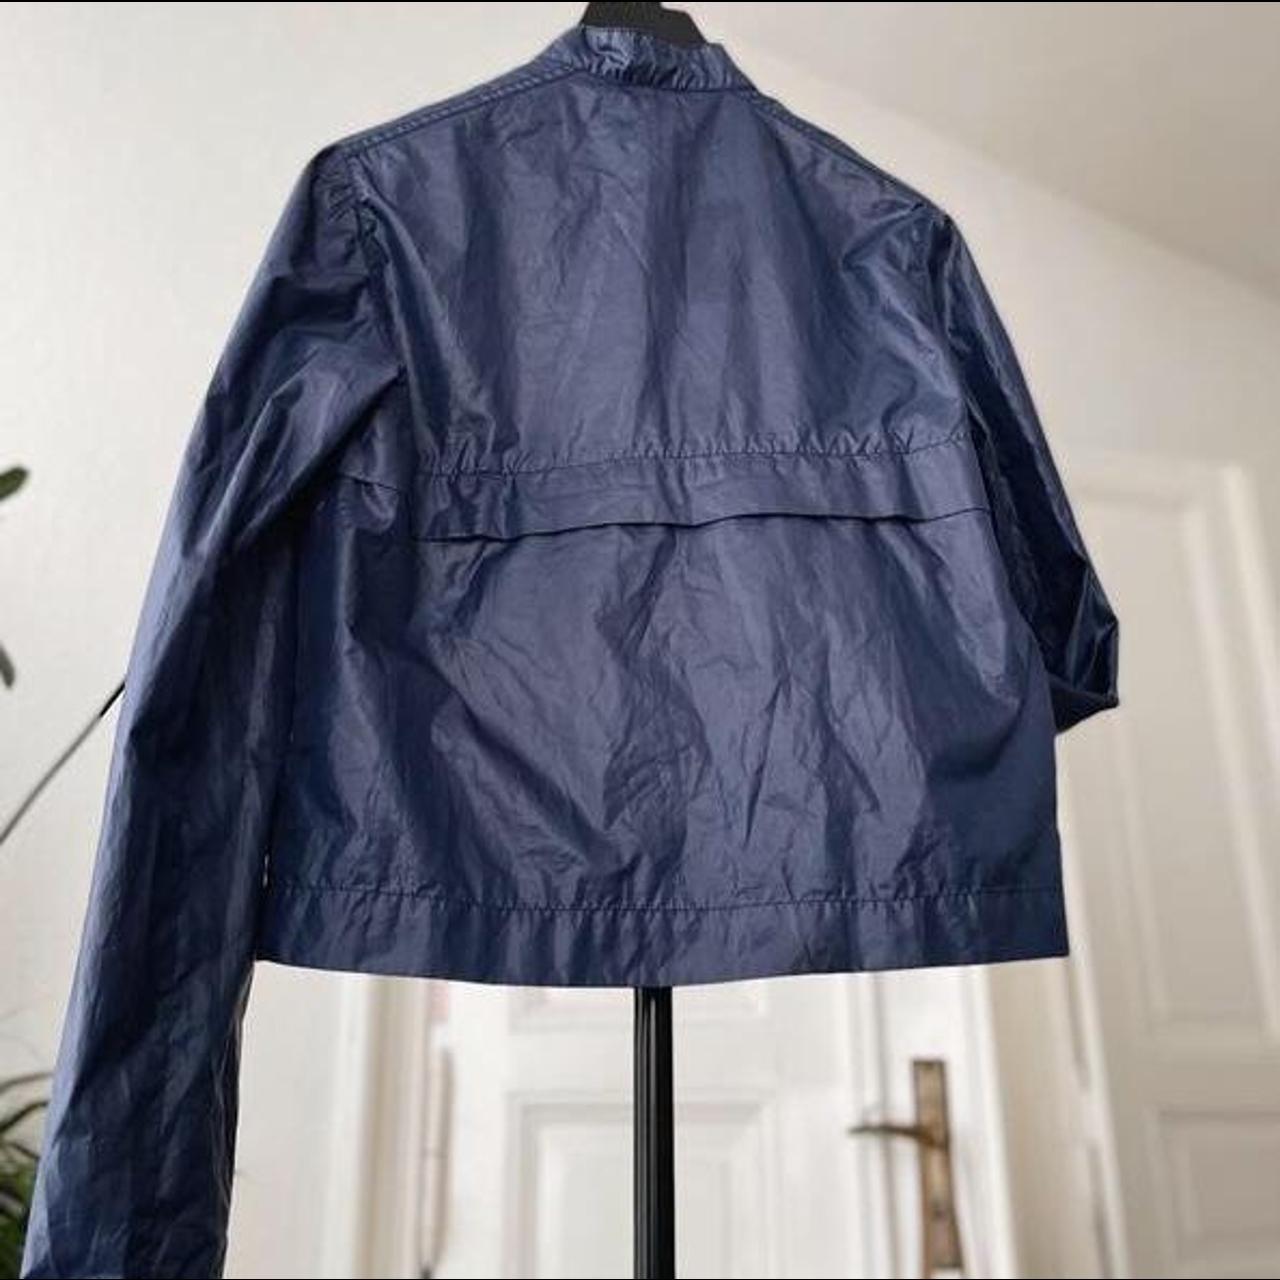 Sportswear uniqlo waterproof rain jacket with stand... - Depop